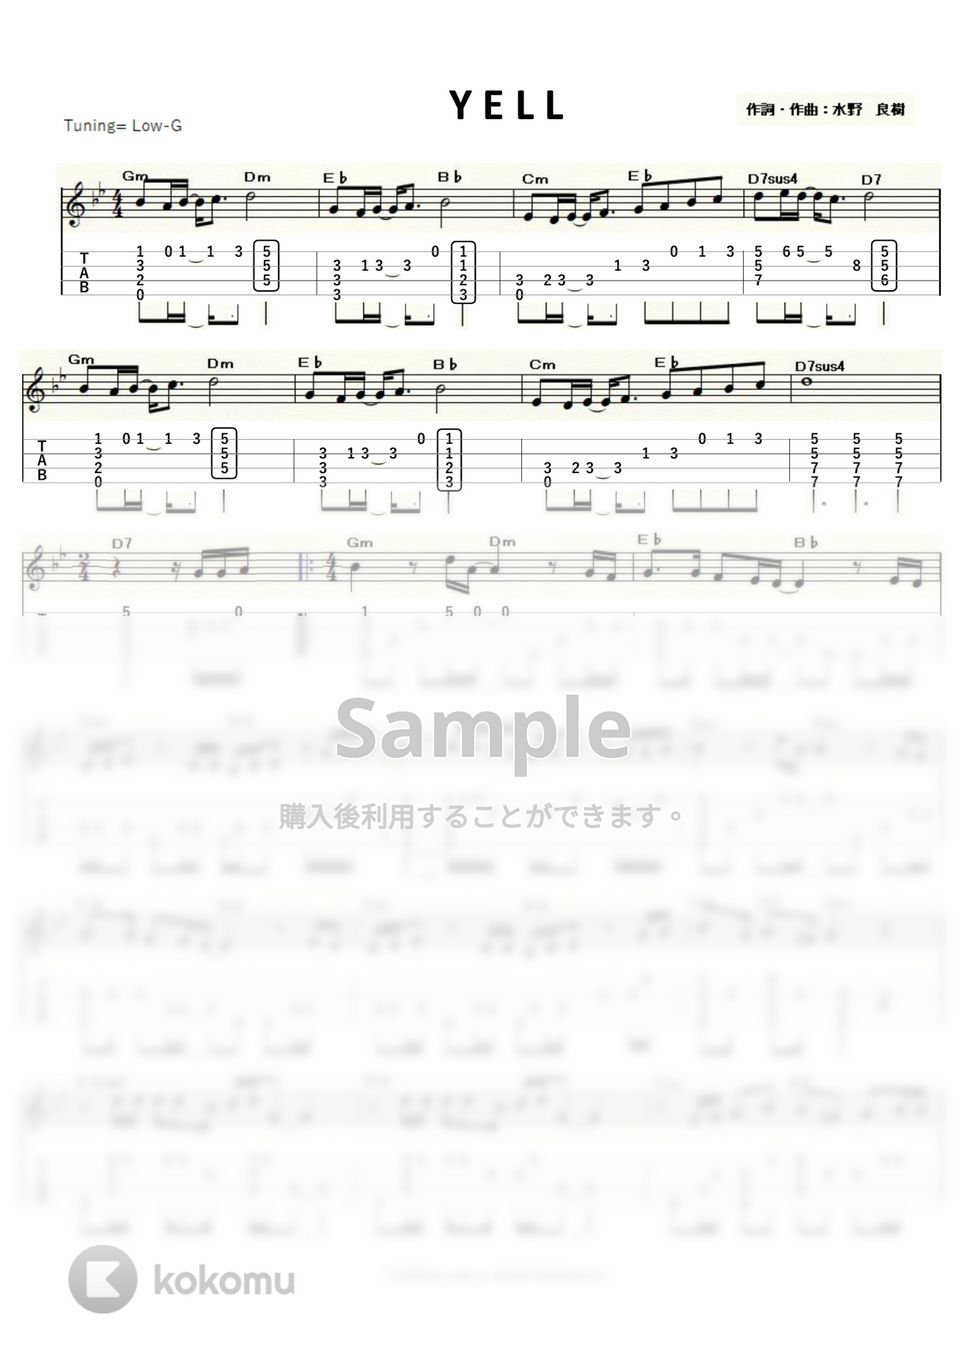 いきものがかり - YELL (ｳｸﾚﾚｿﾛ/Low-G/上級) by ukulelepapa